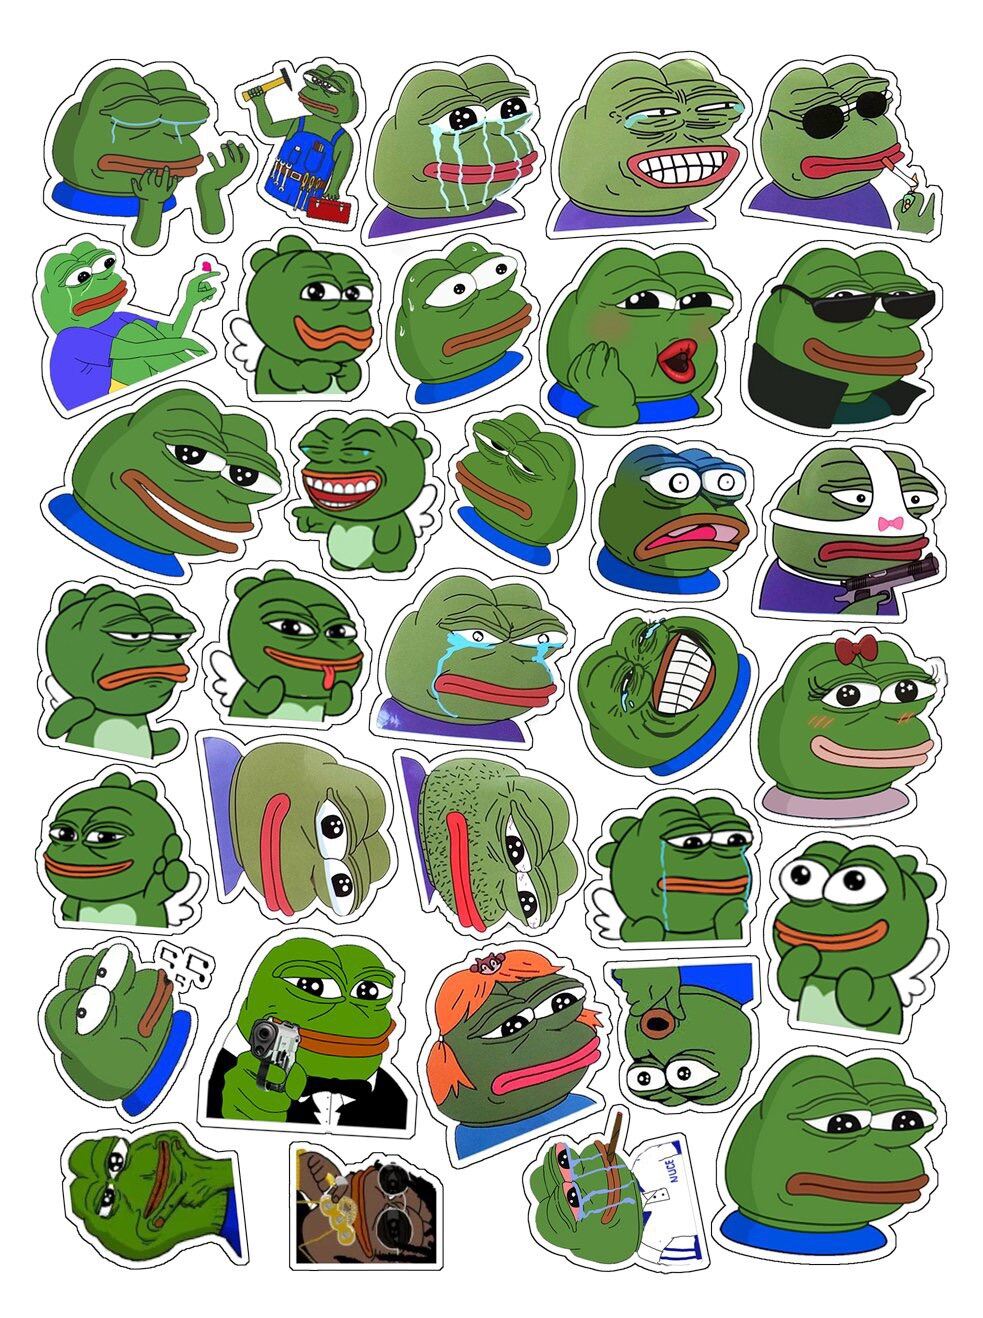 Ứng dụng của ếch xanh trong việc tạo ra các trào lưu Meme không giới hạn. Từ khả năng biểu hiện đa năng của nó, ếch xanh đã trở thành một nhân vật quen thuộc trong văn hóa Internet. Hãy xem hình ảnh liên quan để khám phá thế giới của những ếch xanh trong các meme hài hước.